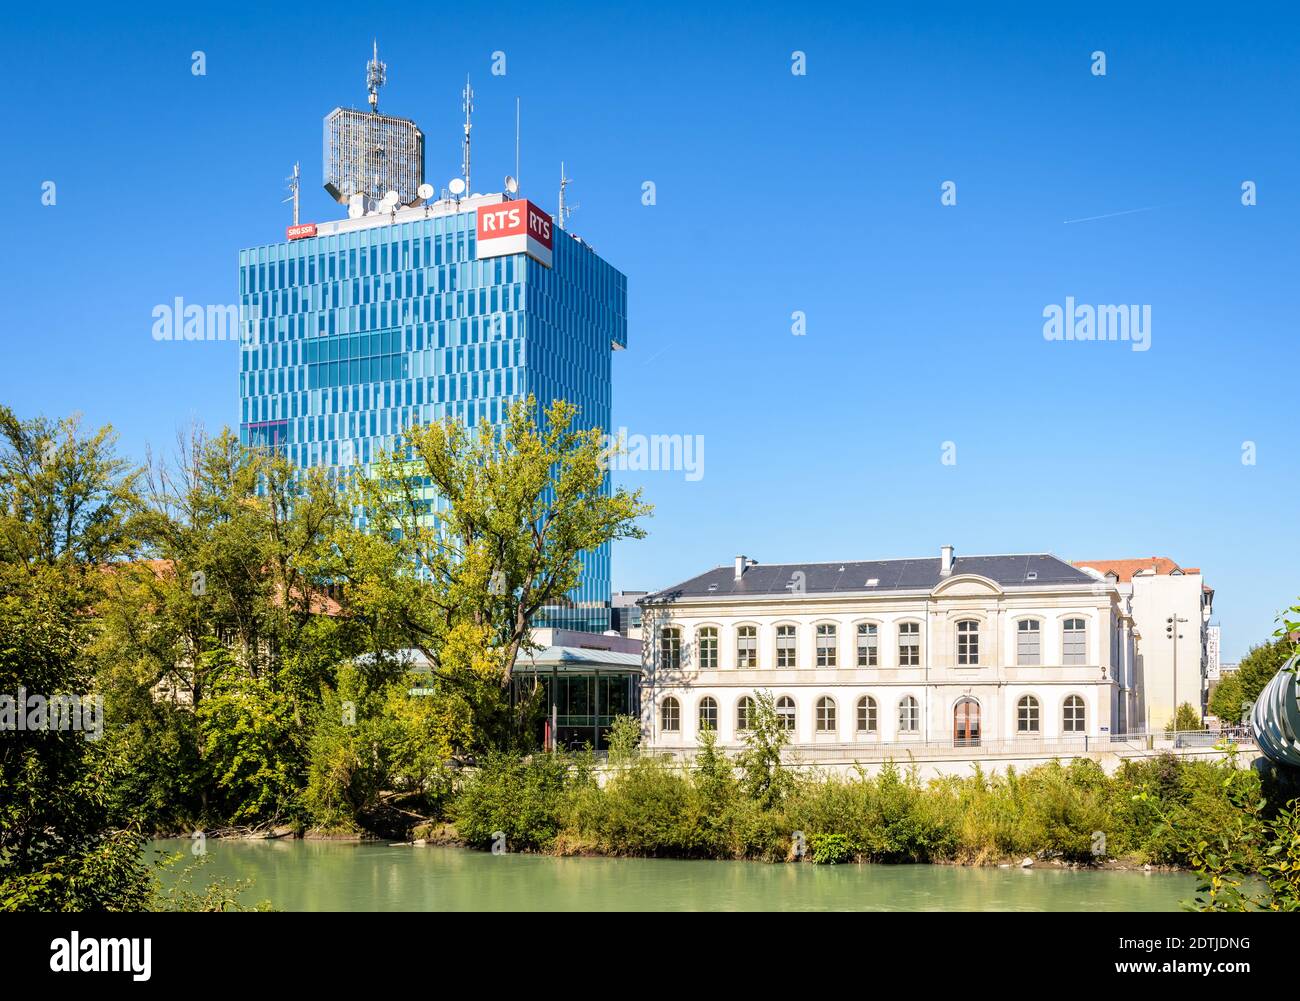 La tour du RTS (radio Television Suisse) sur les rives de l'Arve à Genève. Banque D'Images